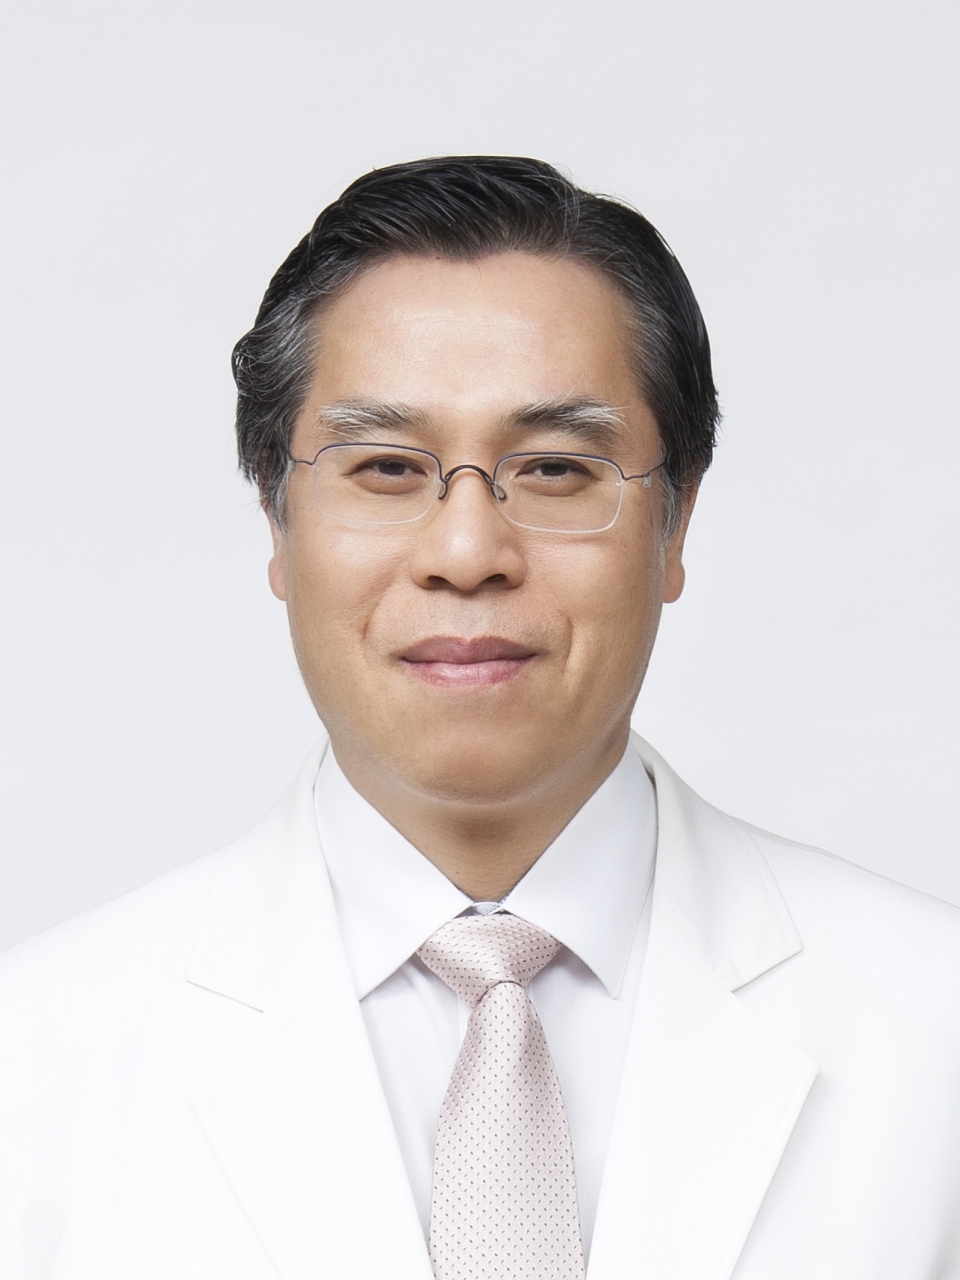 한양대구리병원 정형외과 박예수 교수